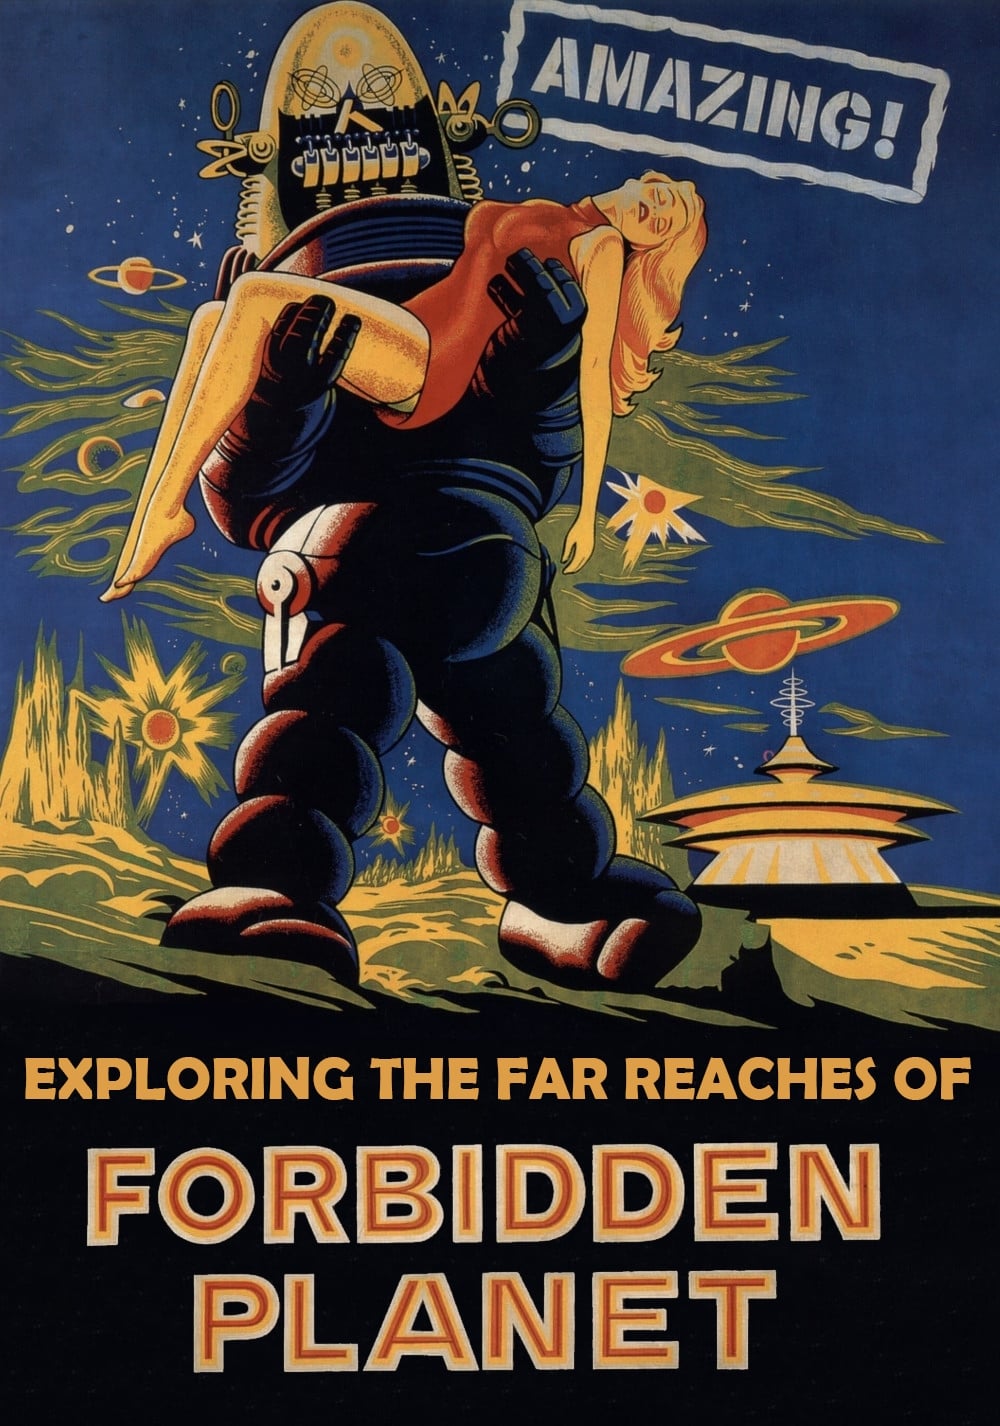 Amazing! Exploring the Far Reaches of Forbidden Planet